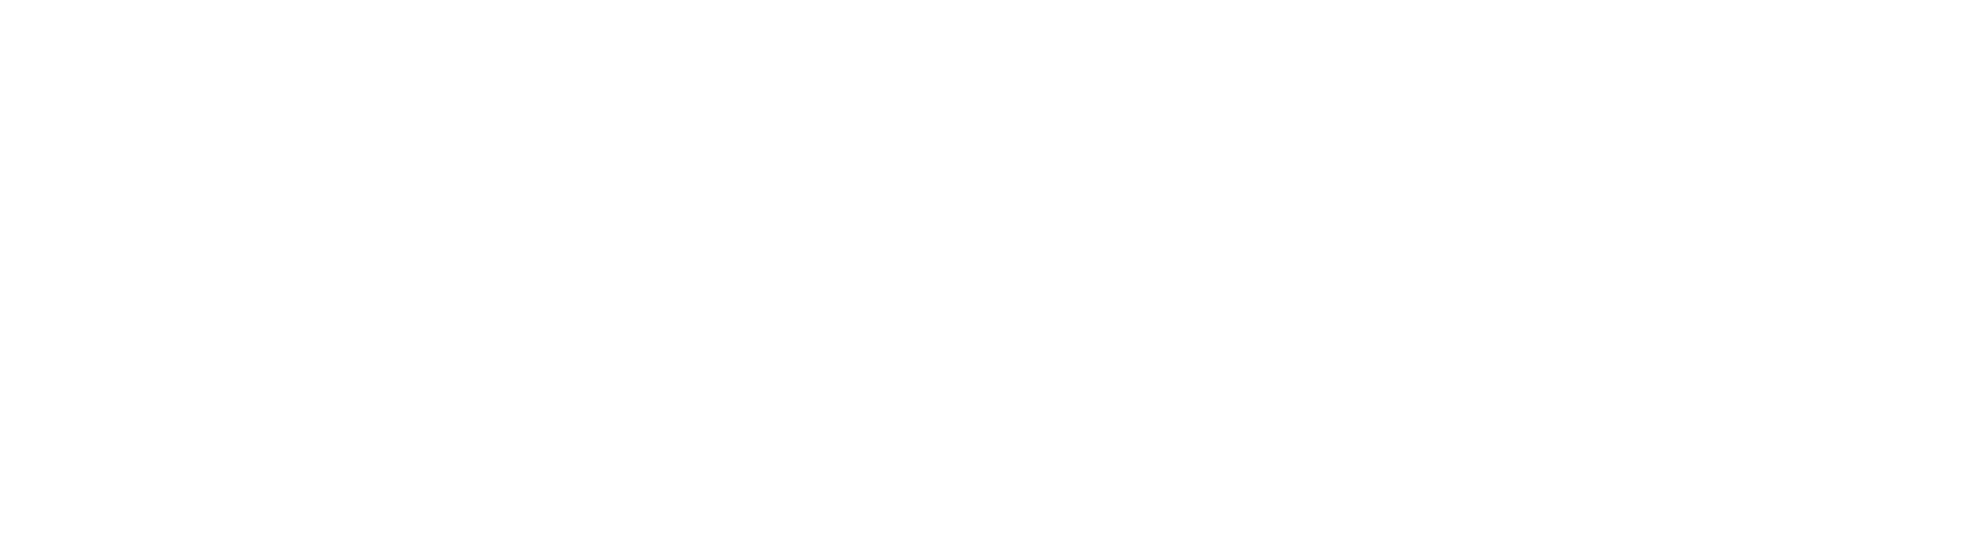 payconiq